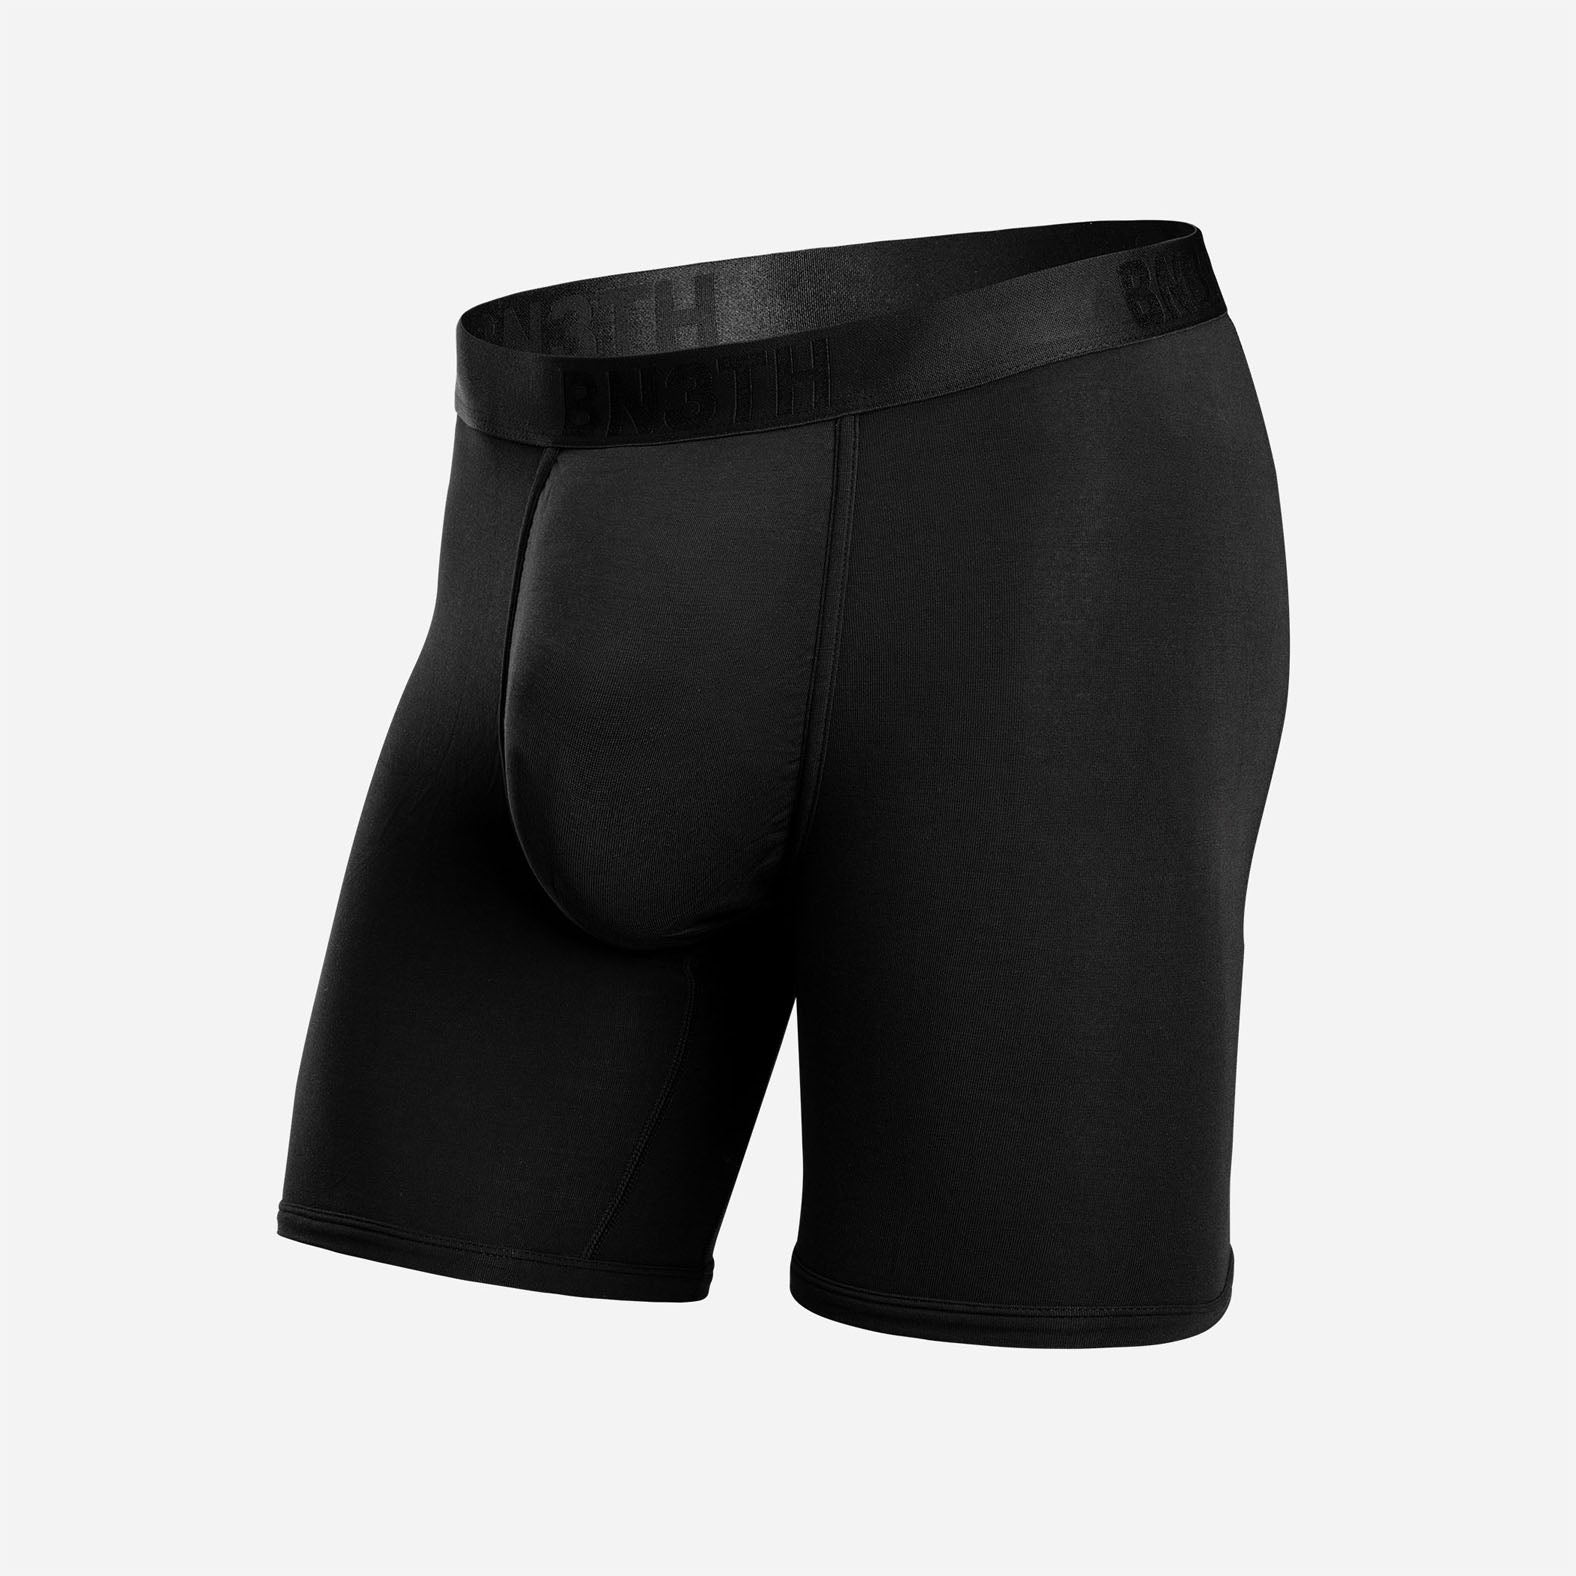 Classic Boxer Brief: Black  BN3TH Underwear –